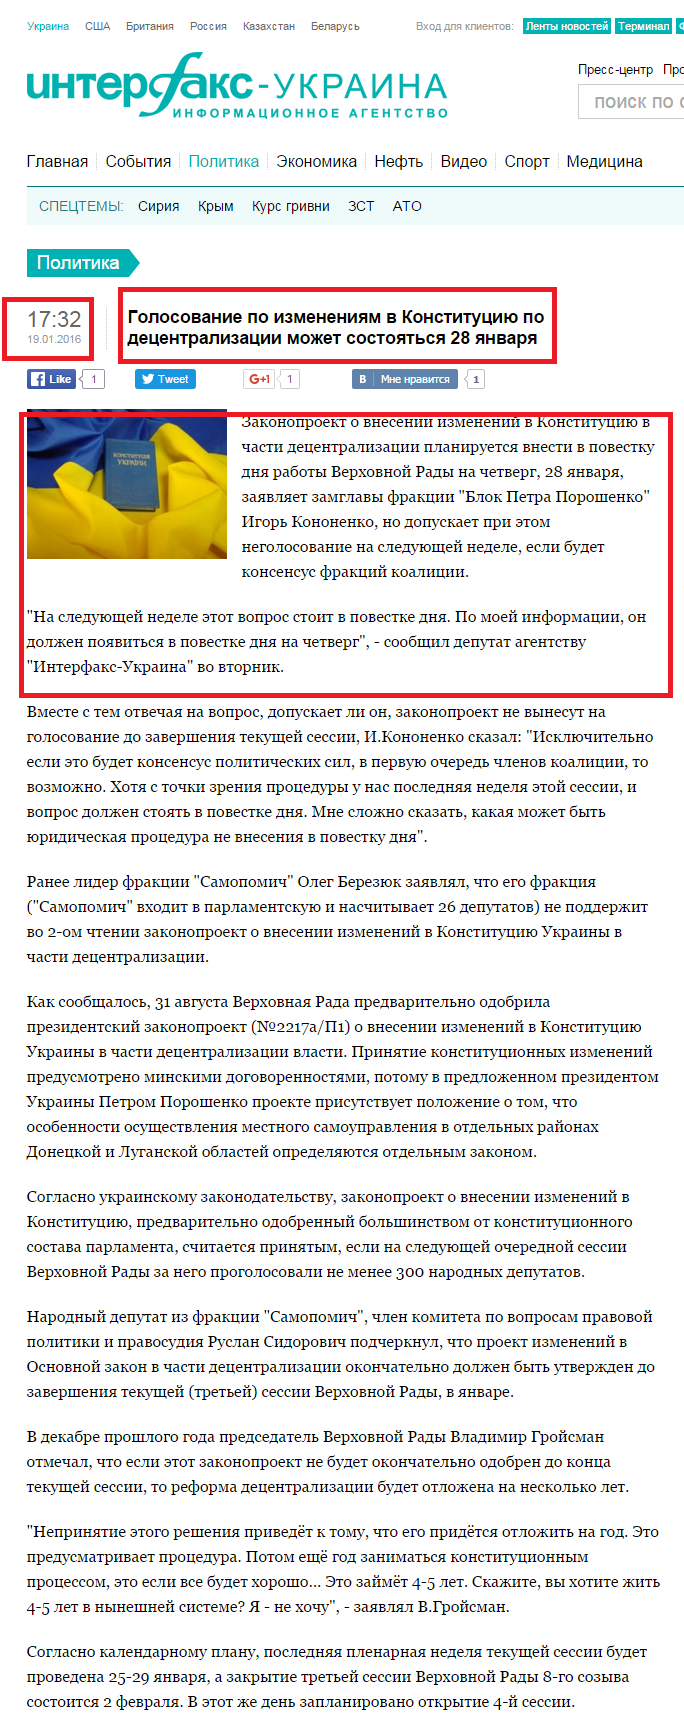 http://interfax.com.ua/news/political/318601.html